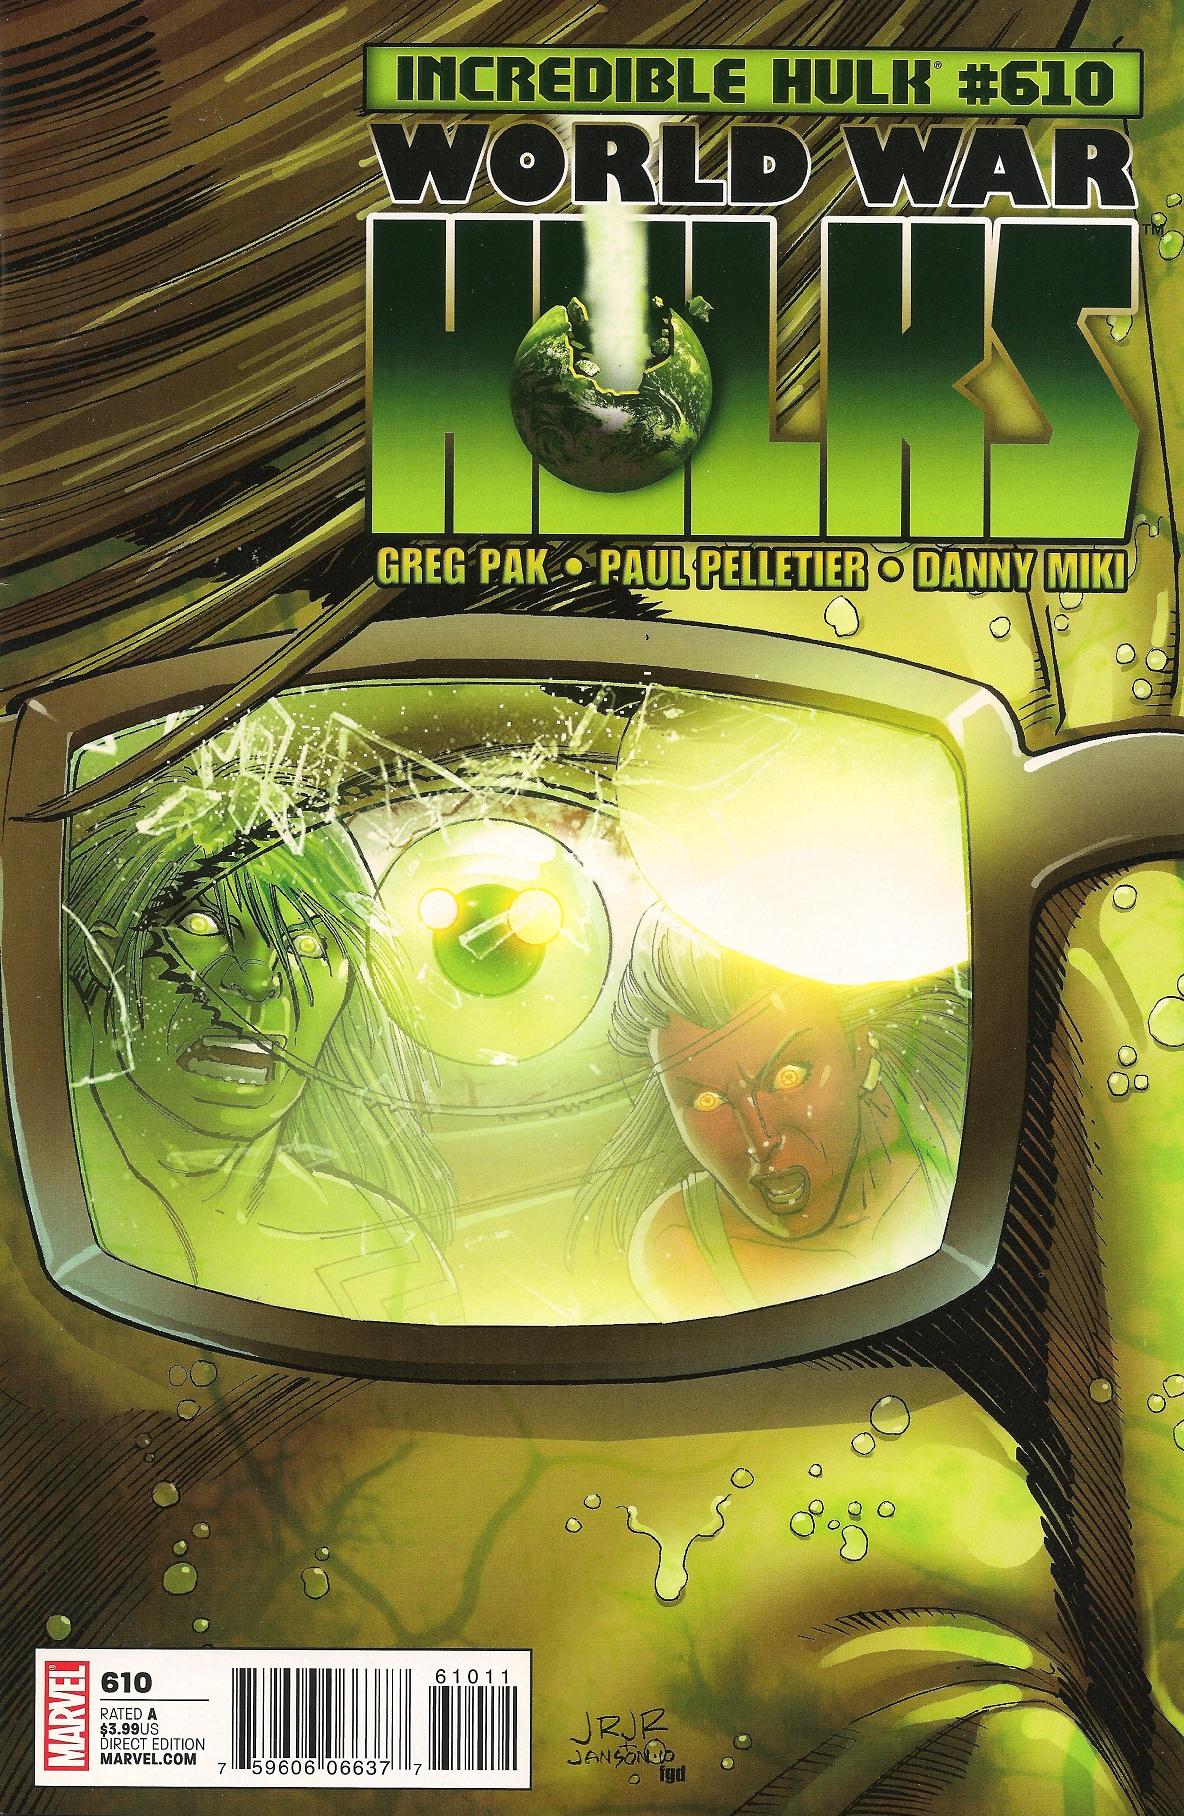 The Incredible Hulk Vol. 1 #610